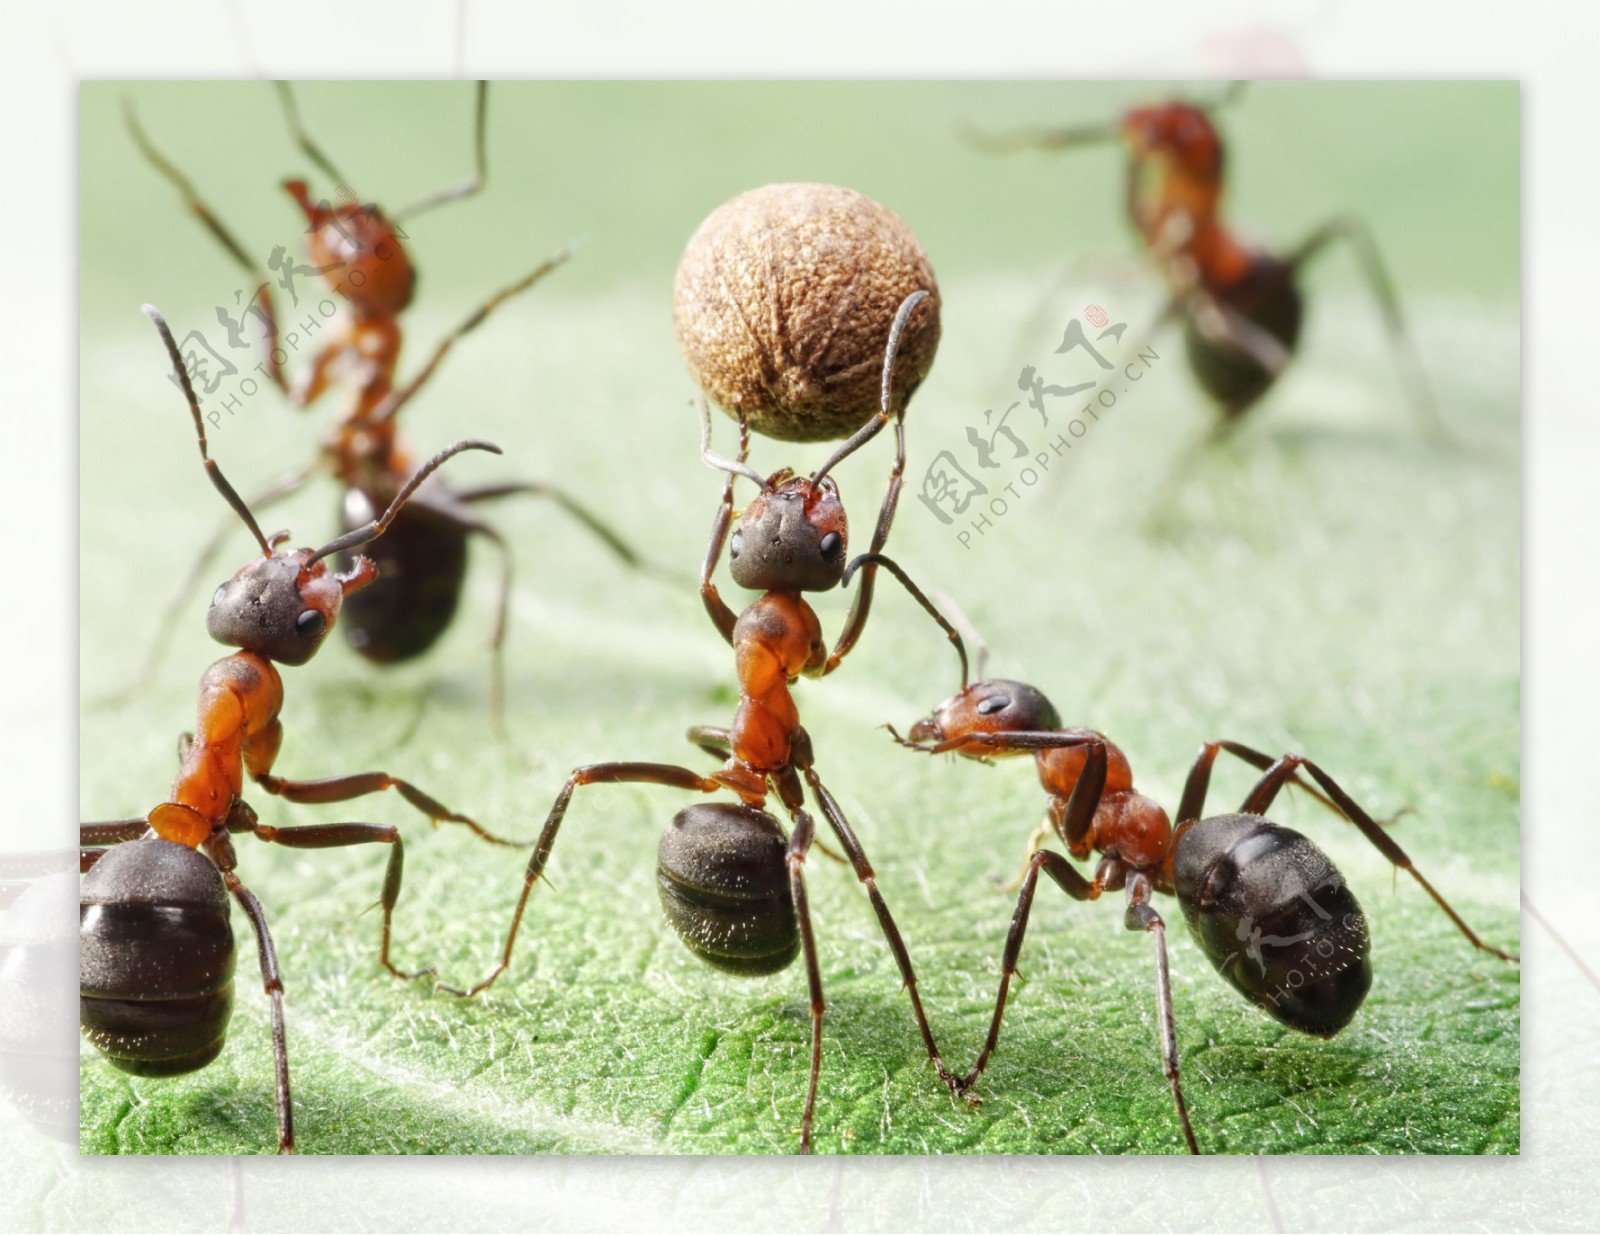 高清蚂蚁搬食物图片